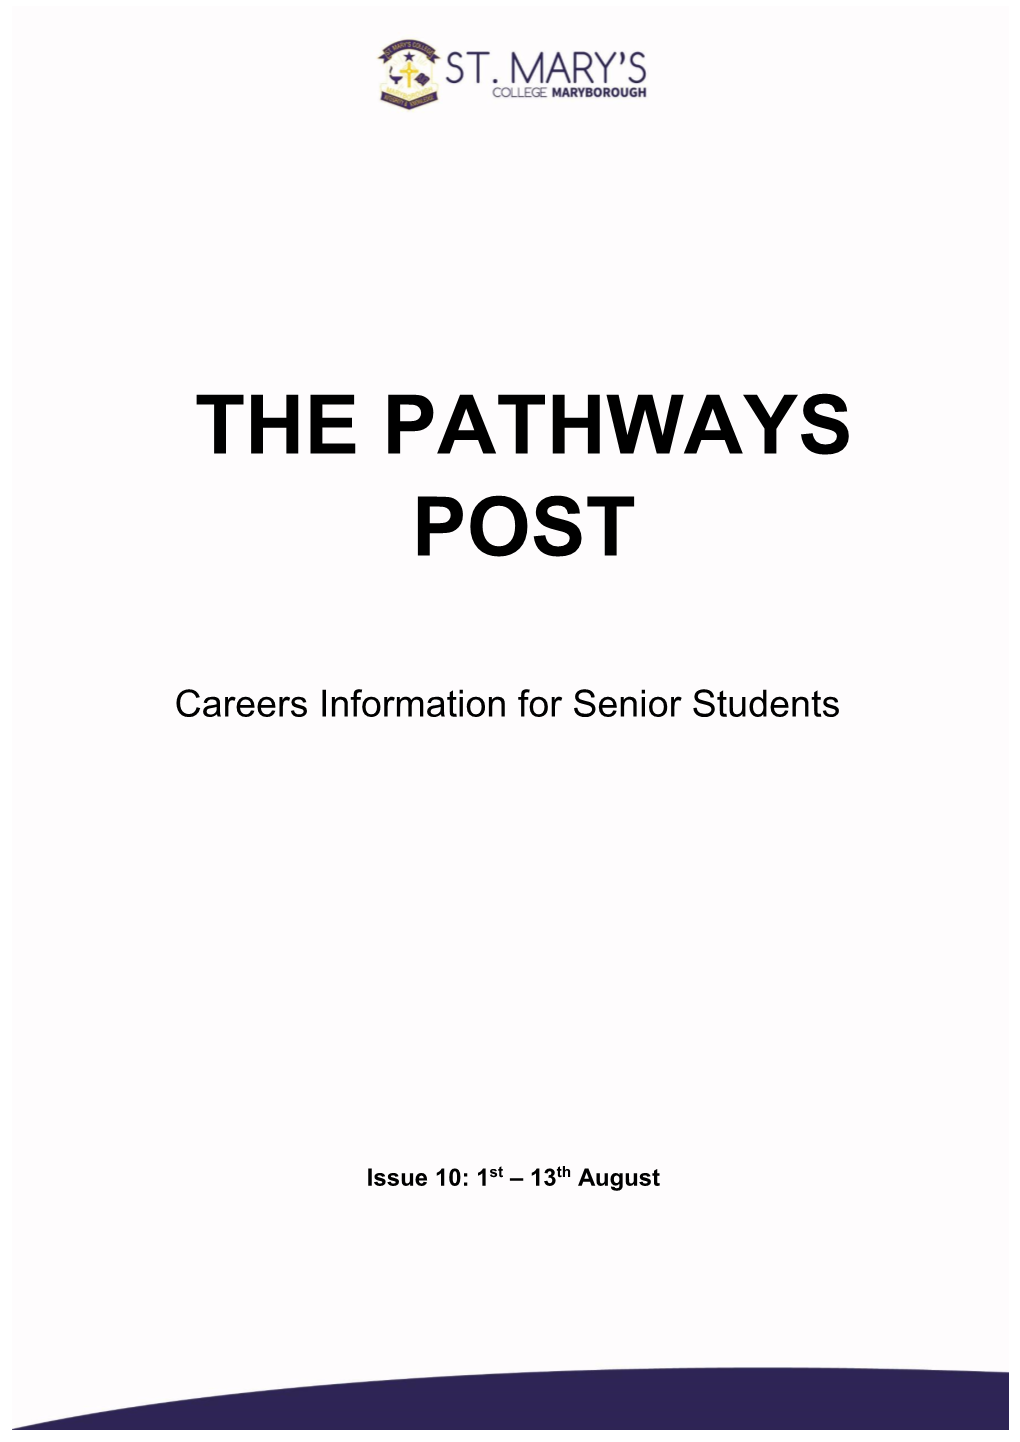 The Pathways Post